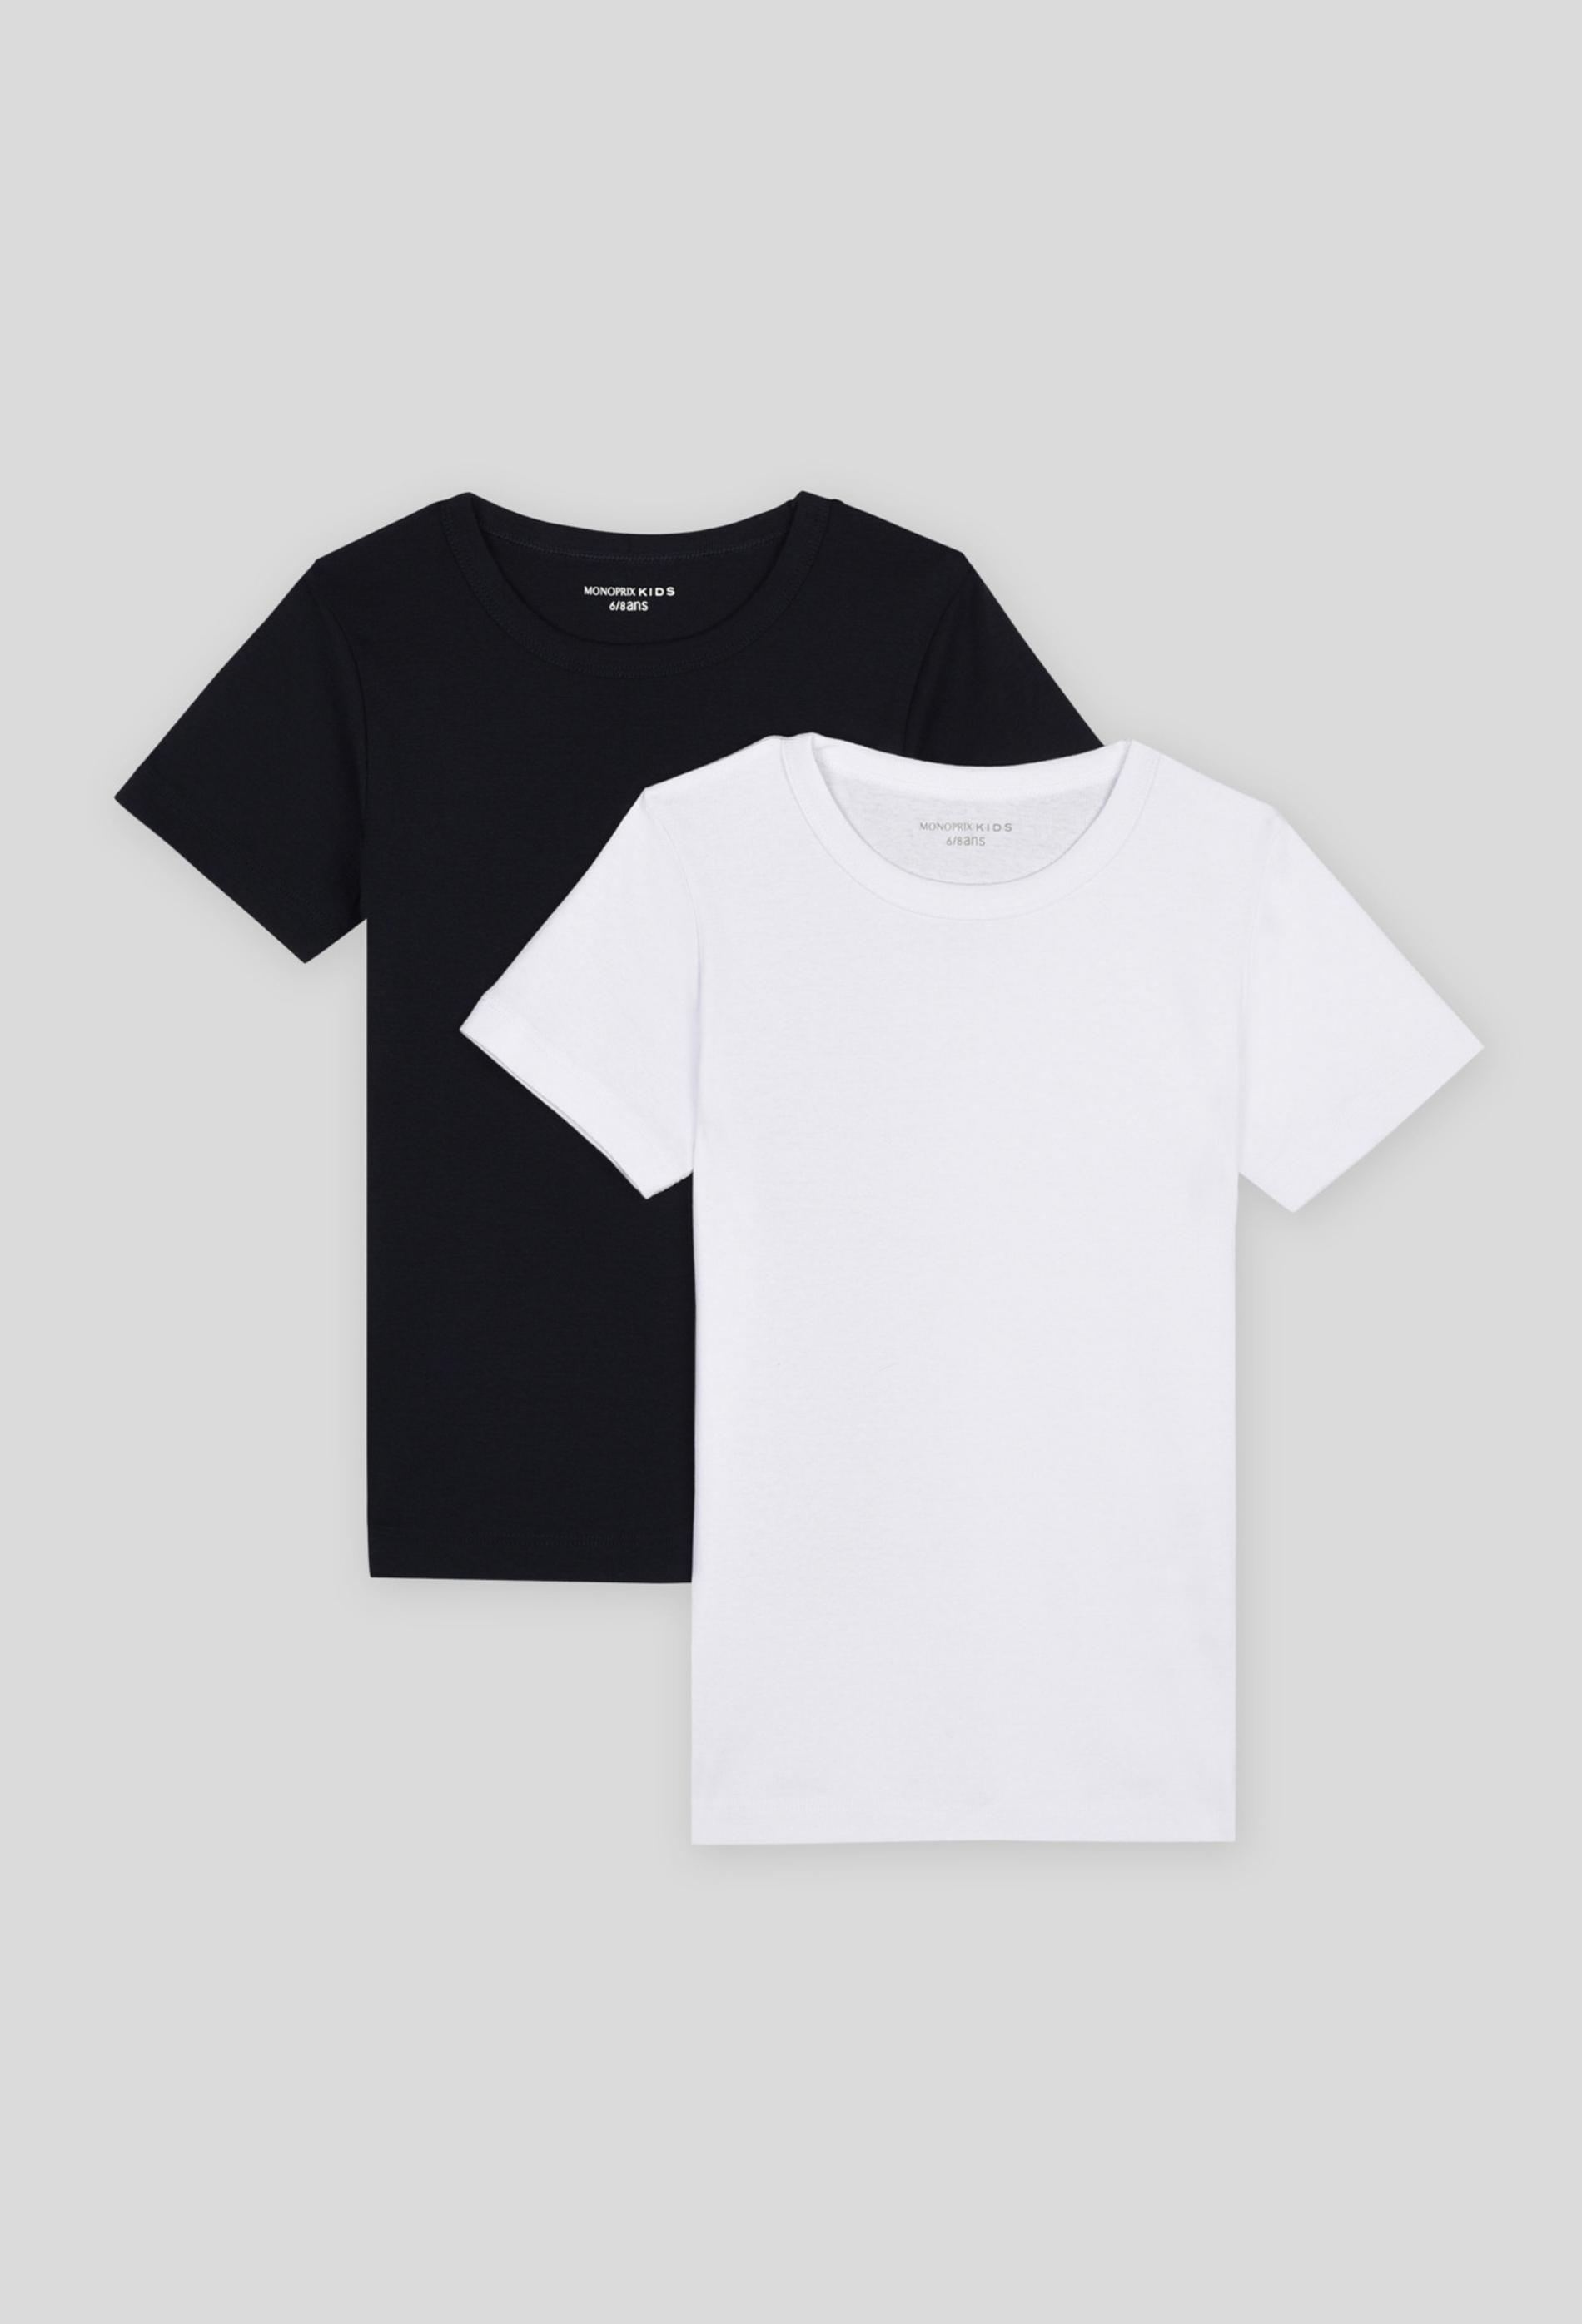 Lot de 2 T-shirt manches courtes unis, certifié OEKO-TEX 2-3 ans blanc